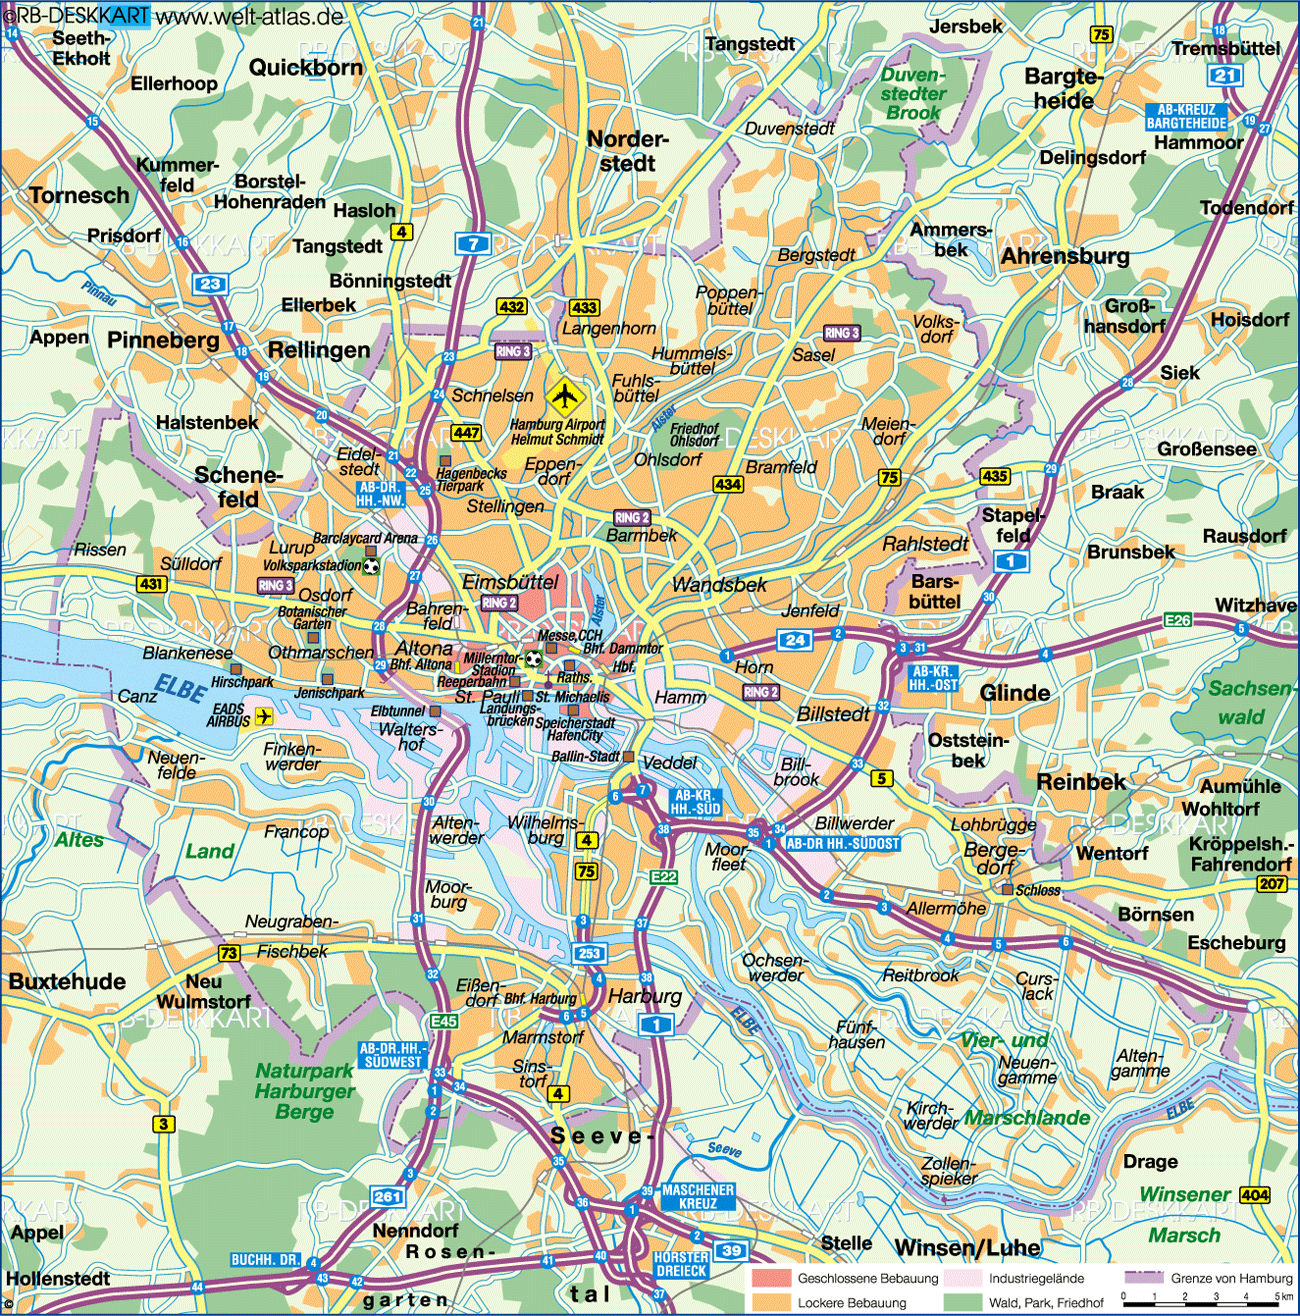  Karte von Hamburg  Stadt in Deutschland  Welt Atlas de